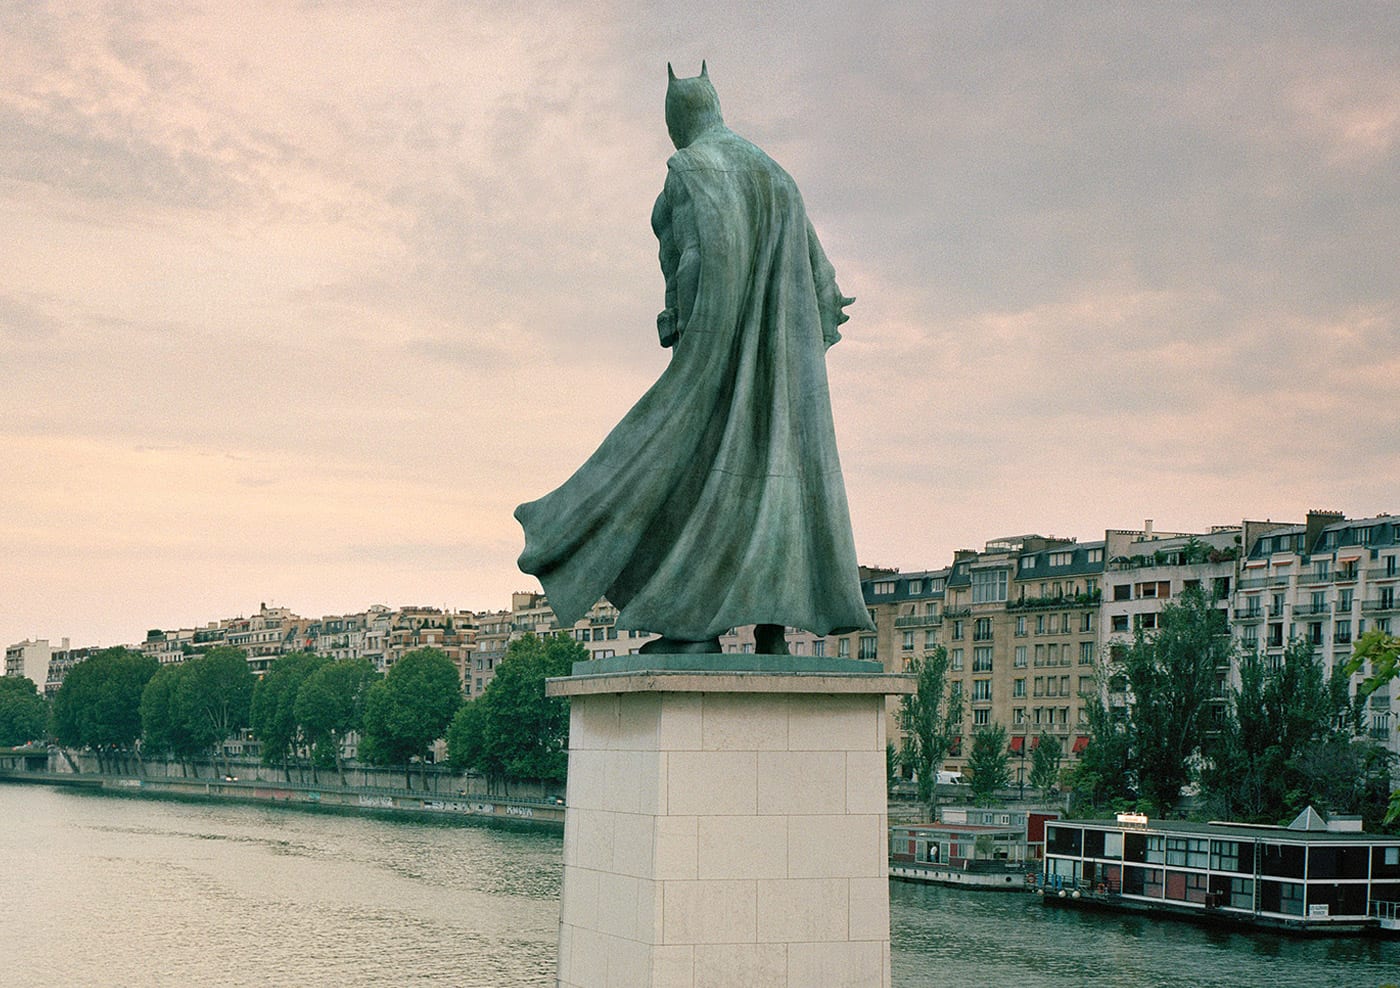 Des statues de personnages iconiques de la culture pop envahissent Paris